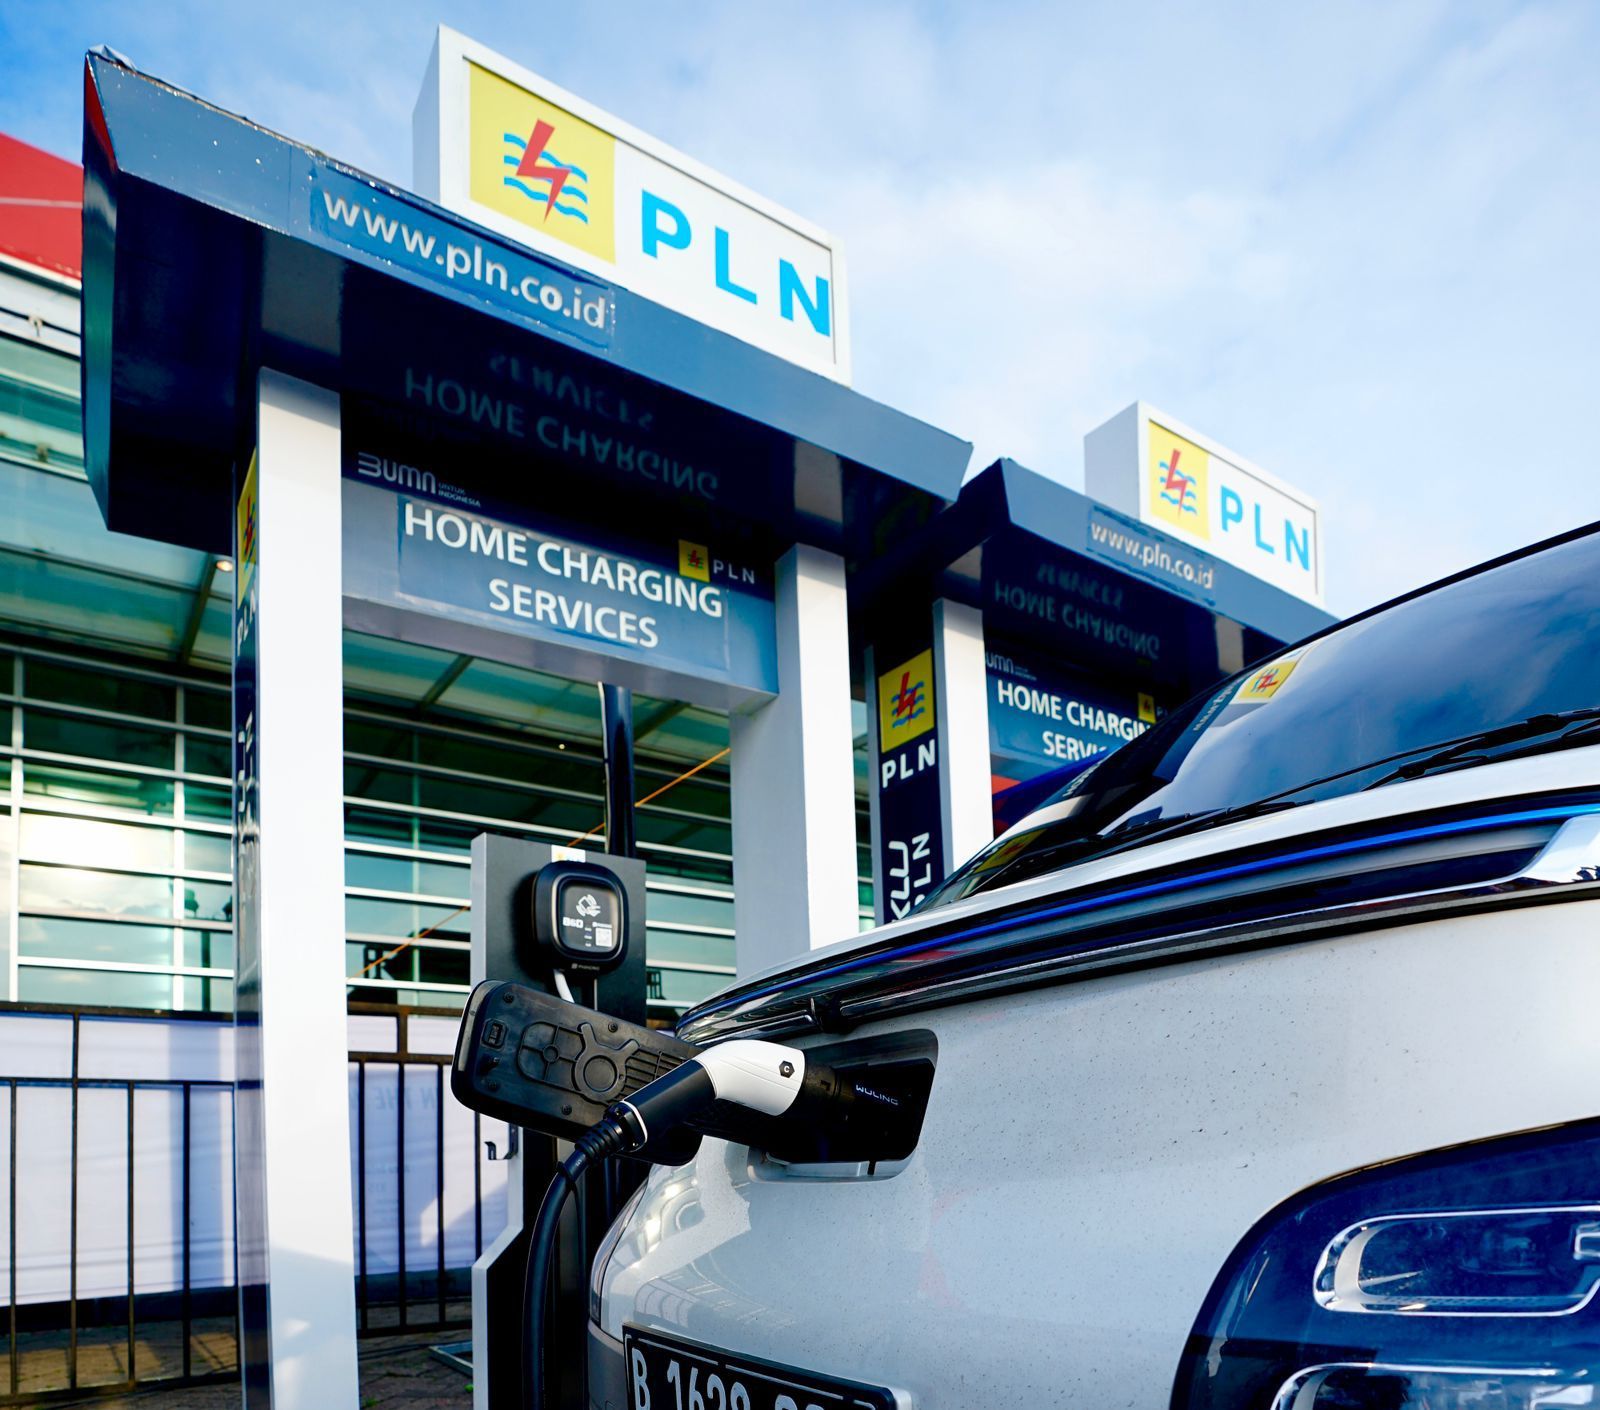 Pengisian daya listrik kendaraan listrik di Hone Charging Service PLN